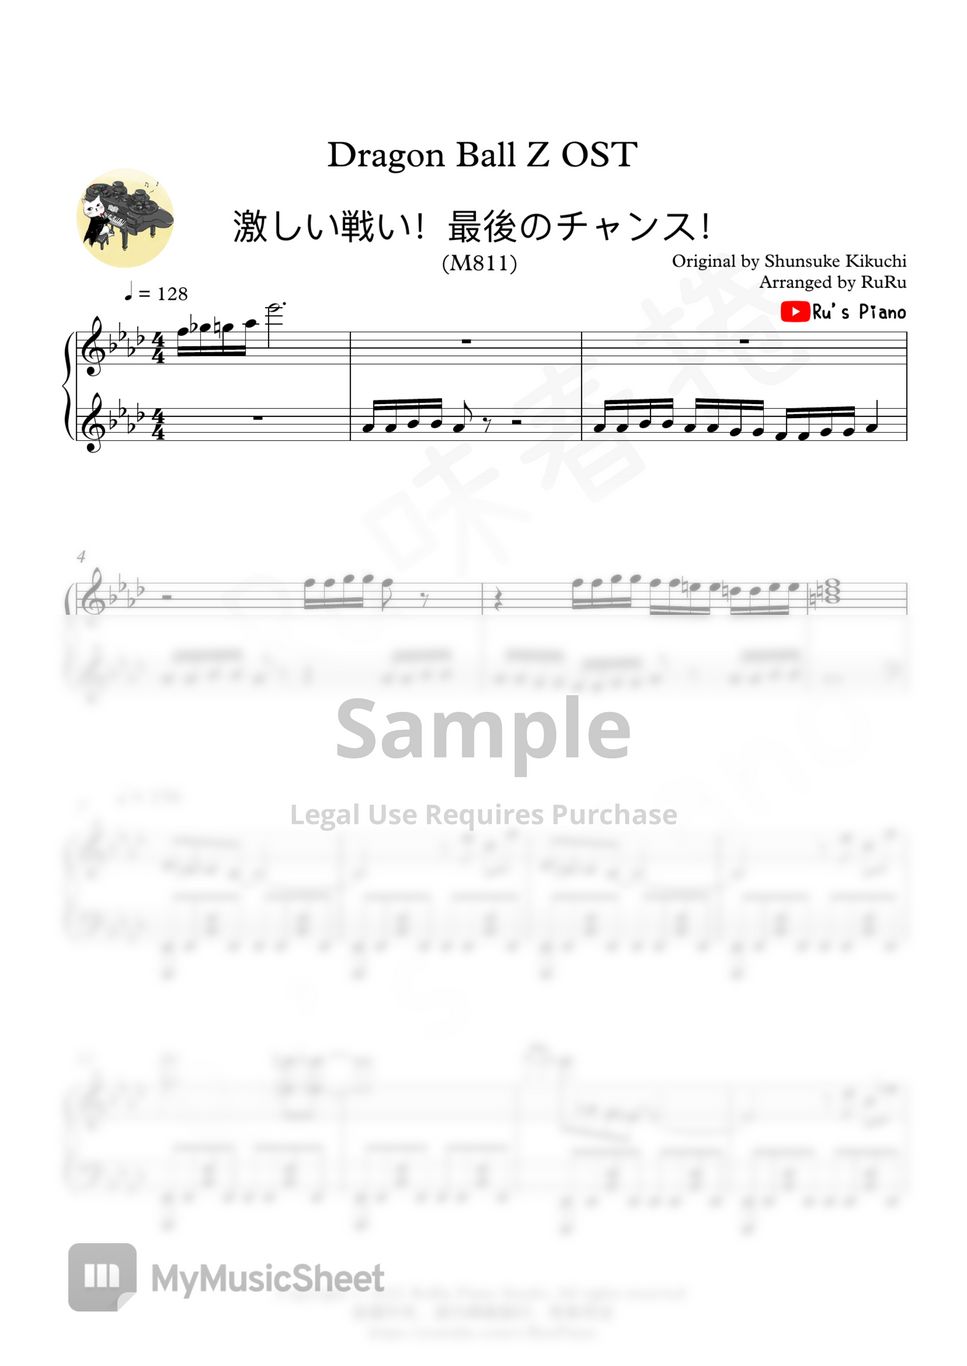 菊池俊輔 - Dragon Ball Z Battle Theme Piano Medley (七龍珠Z) by Ru's Piano